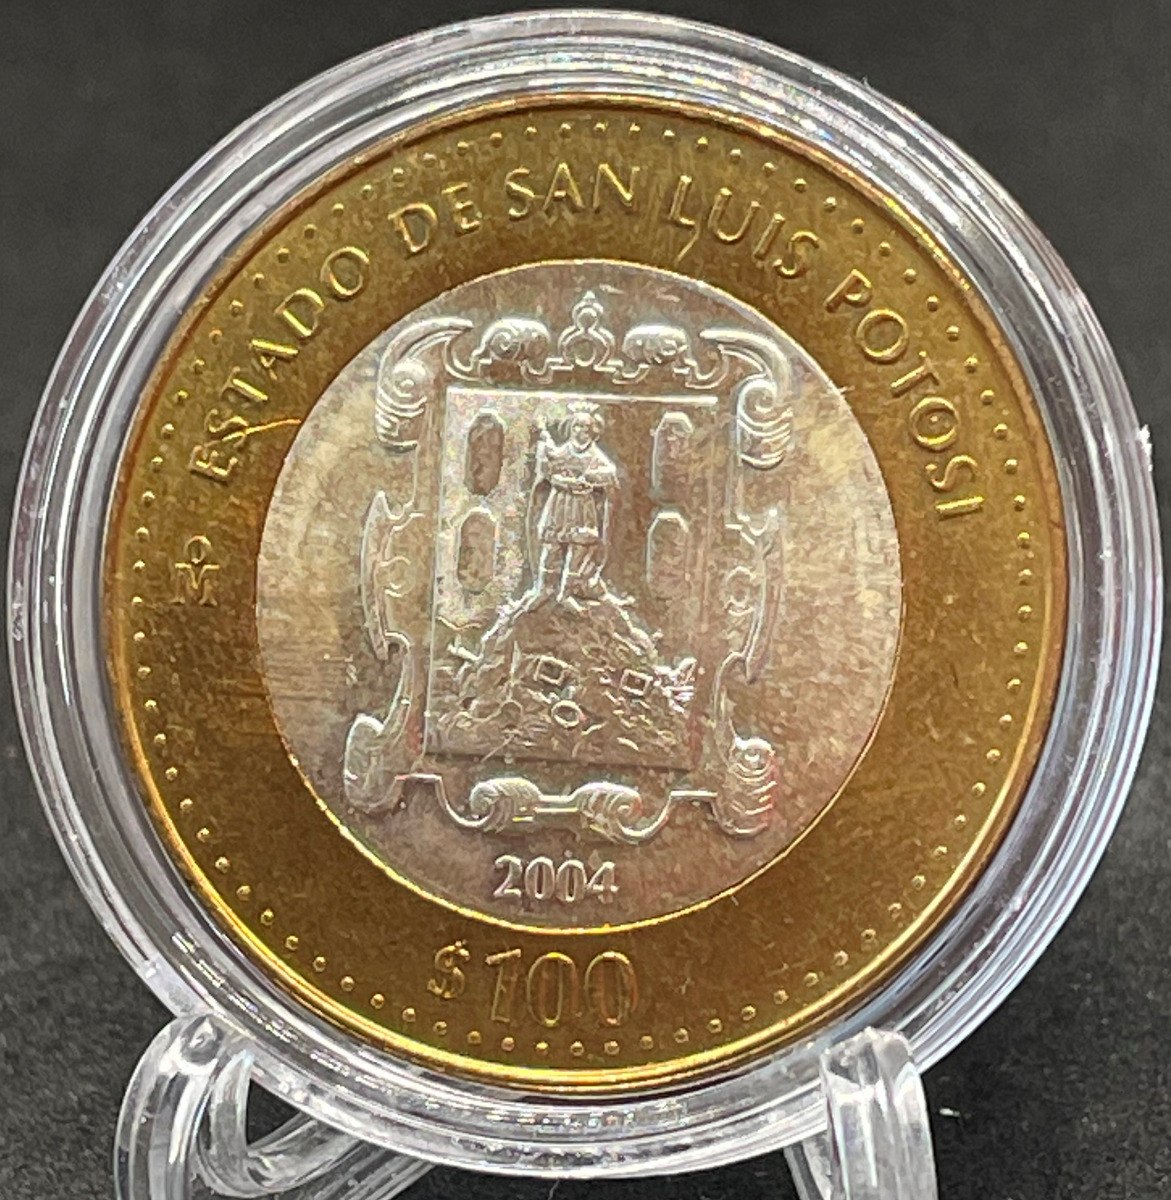 Moneda Pesos Bimetalica San Luis Potosi Mercado Libre